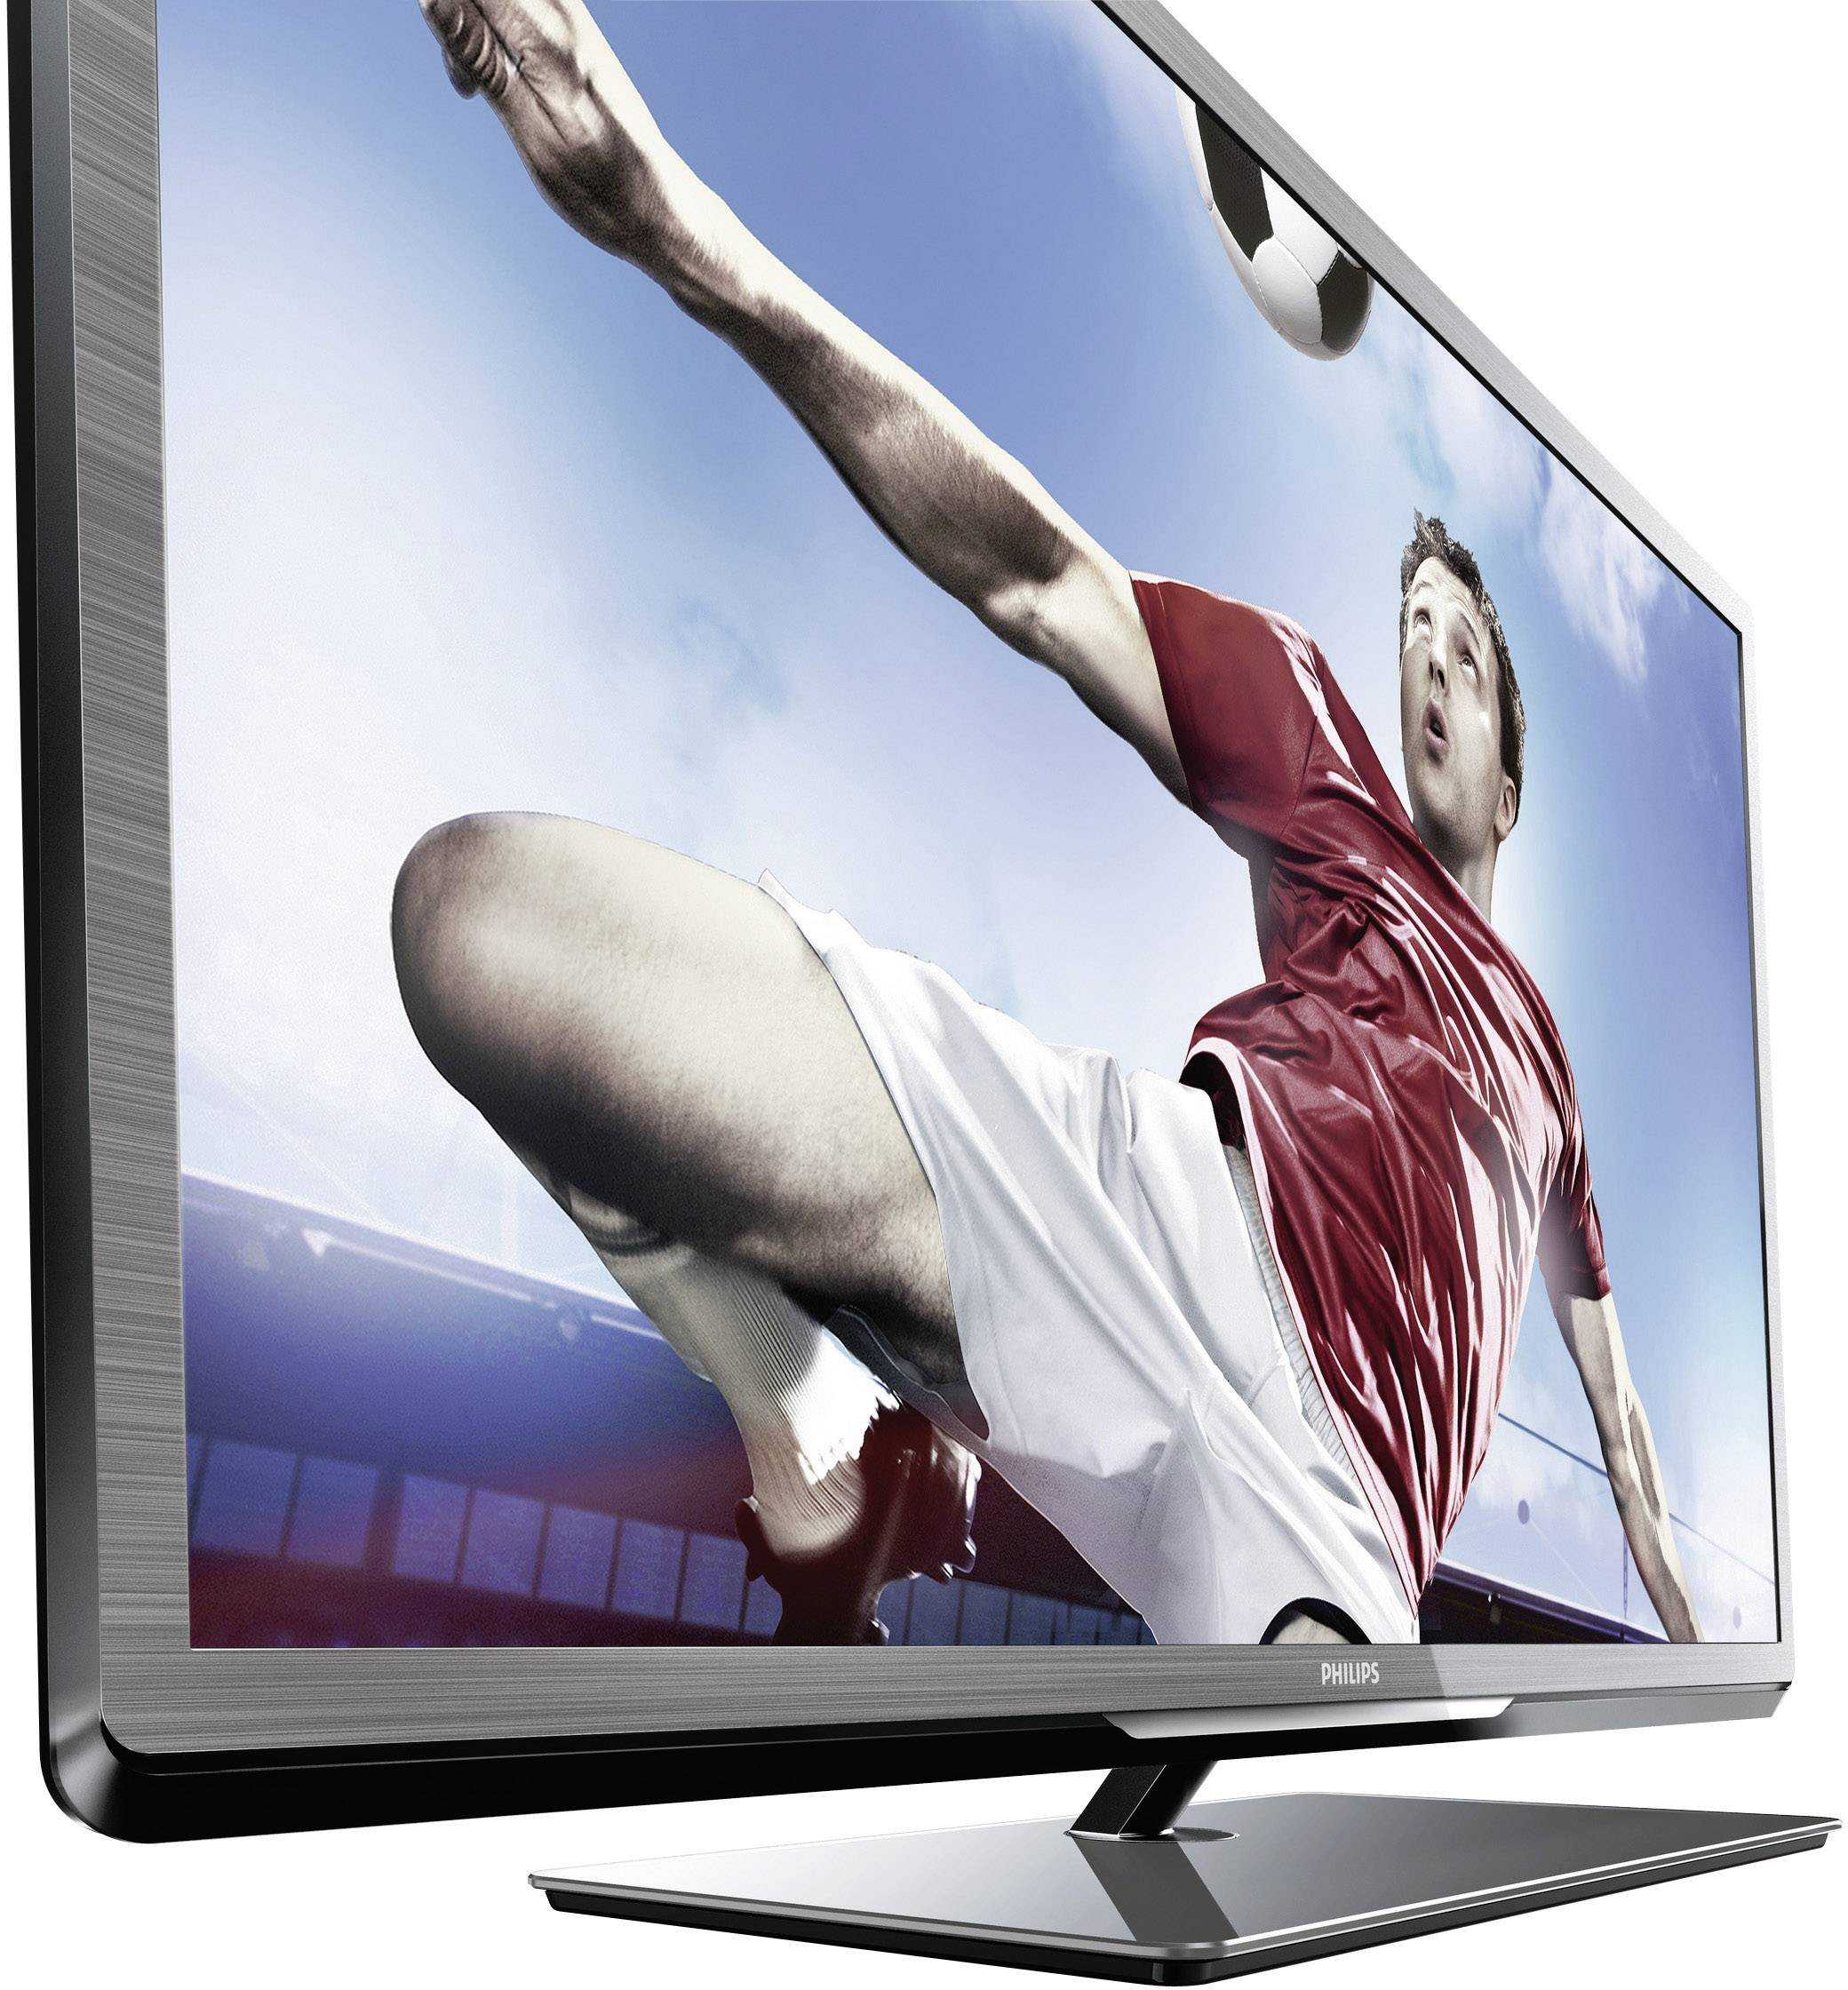 Philips 46pfl7007t - купить , скидки, цена, отзывы, обзор, характеристики - телевизоры